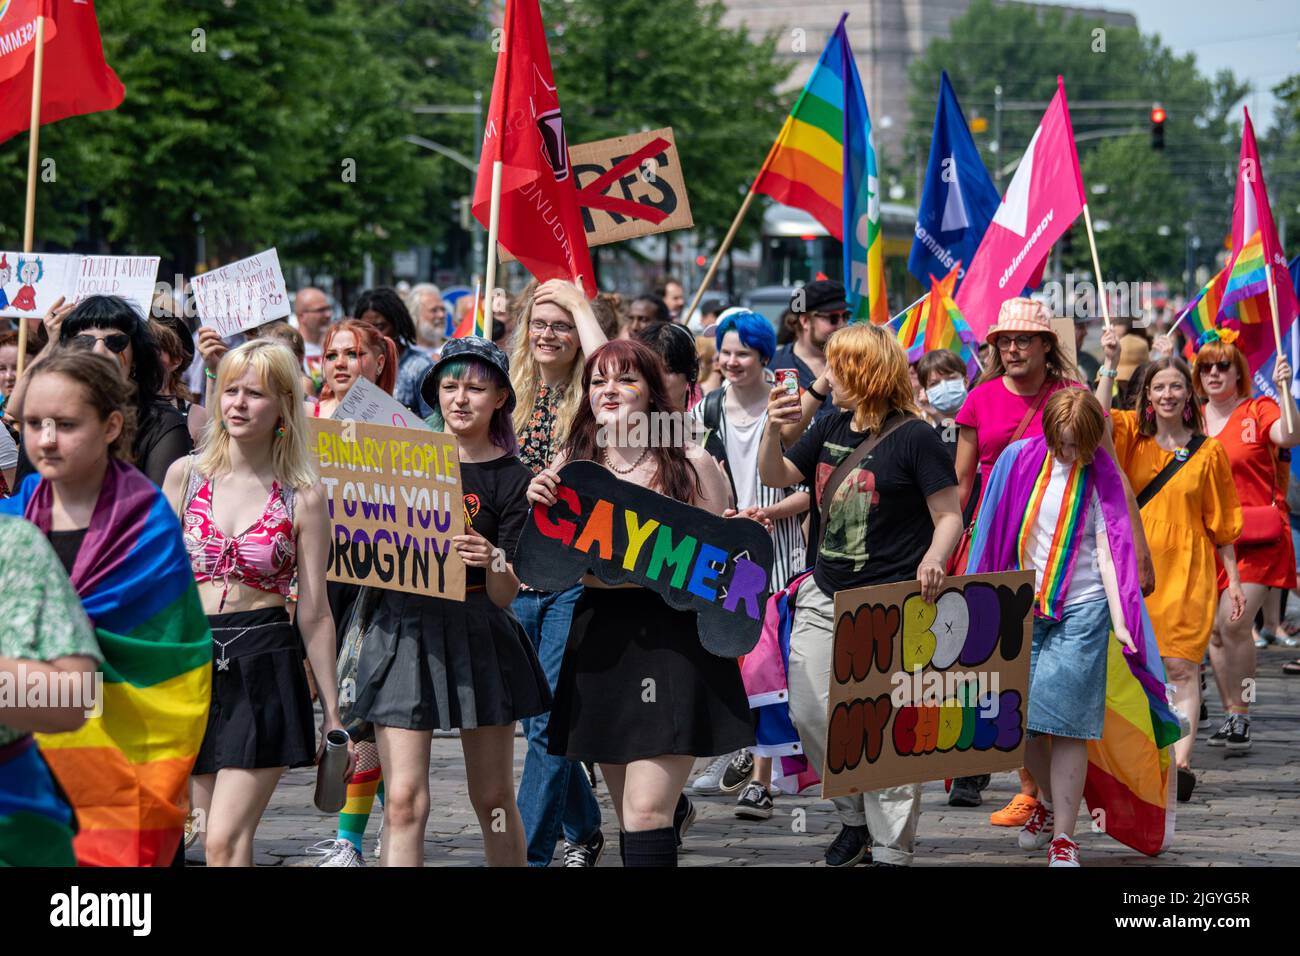 Junge Menschen marschieren mit Schildern und Fahnen bei der Helsinki Pride 2022 Parade in Mannerheimintie, Helsinki, Finnland Stockfoto